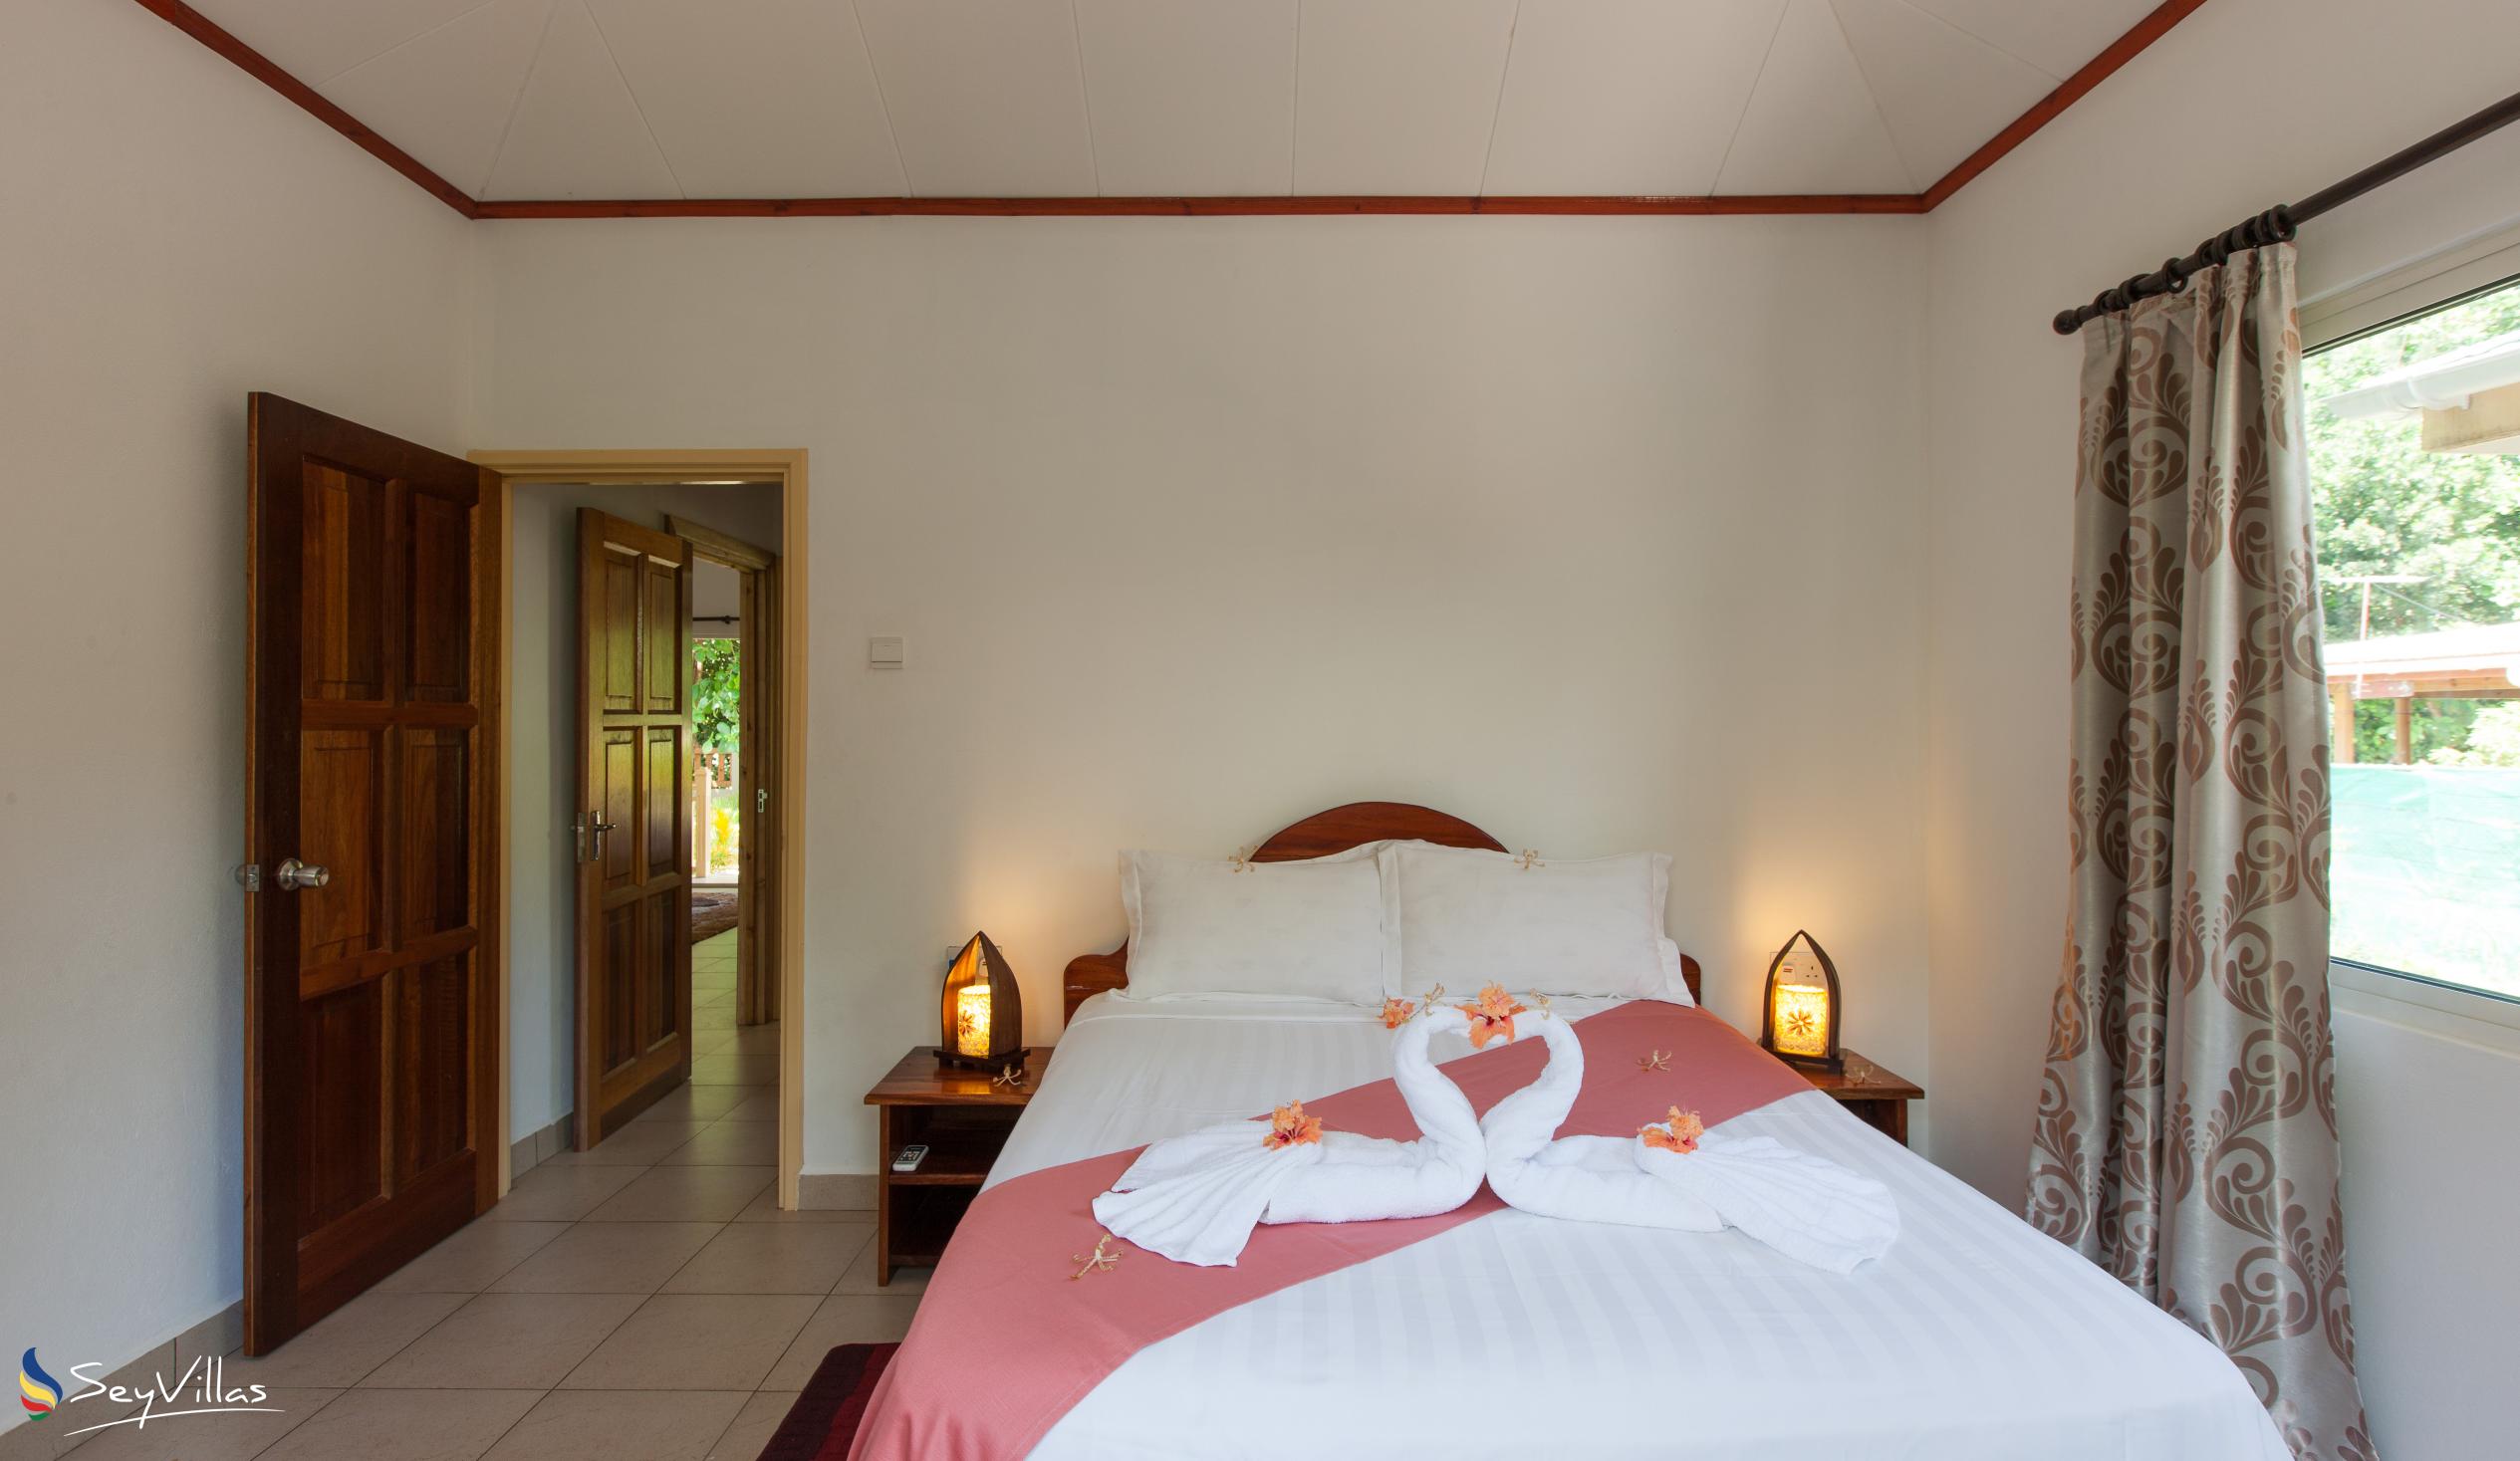 Foto 25: Hostellerie La Digue - Chalet 3 chambres - La Digue (Seychelles)